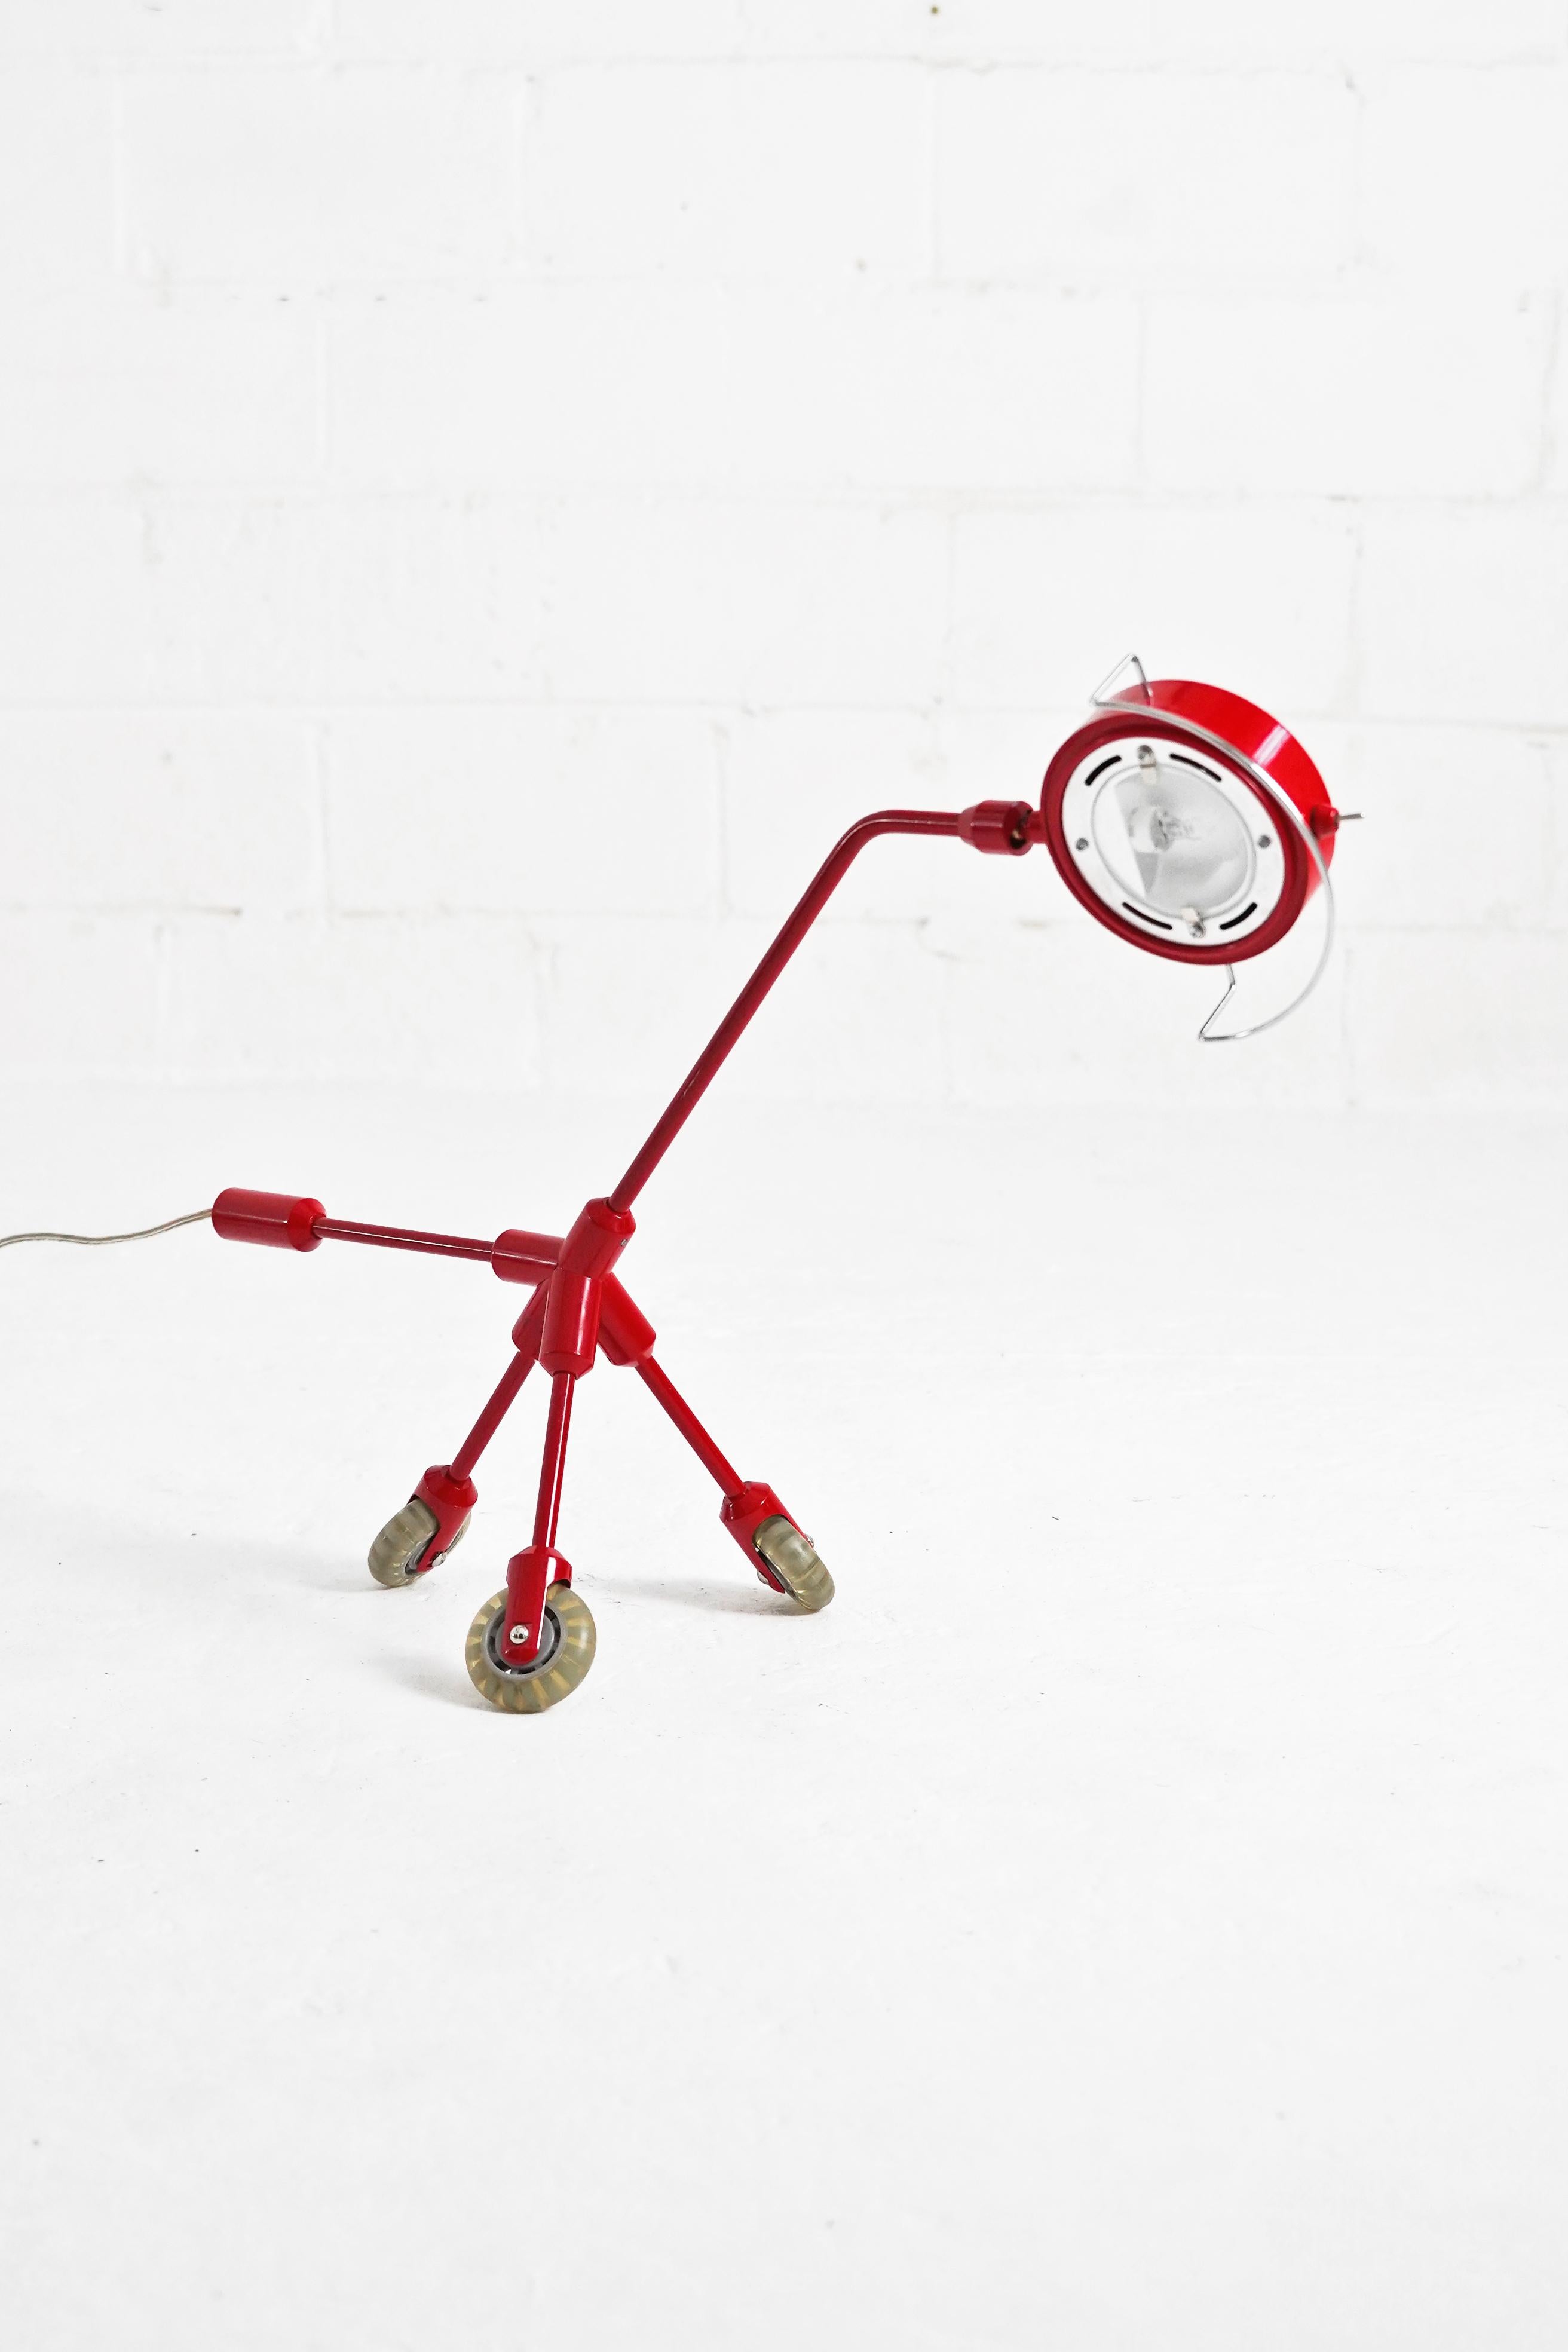 Étonnante lampe de table à roulettes Kila, chien rouge vif, conçue par Harry Allen pour IKEA. En très bon état vintage, fonctionnant parfaitement avec une fiche américaine à 2 broches. L'appareil peut pivoter pour les besoins de l'utilisateur, comme